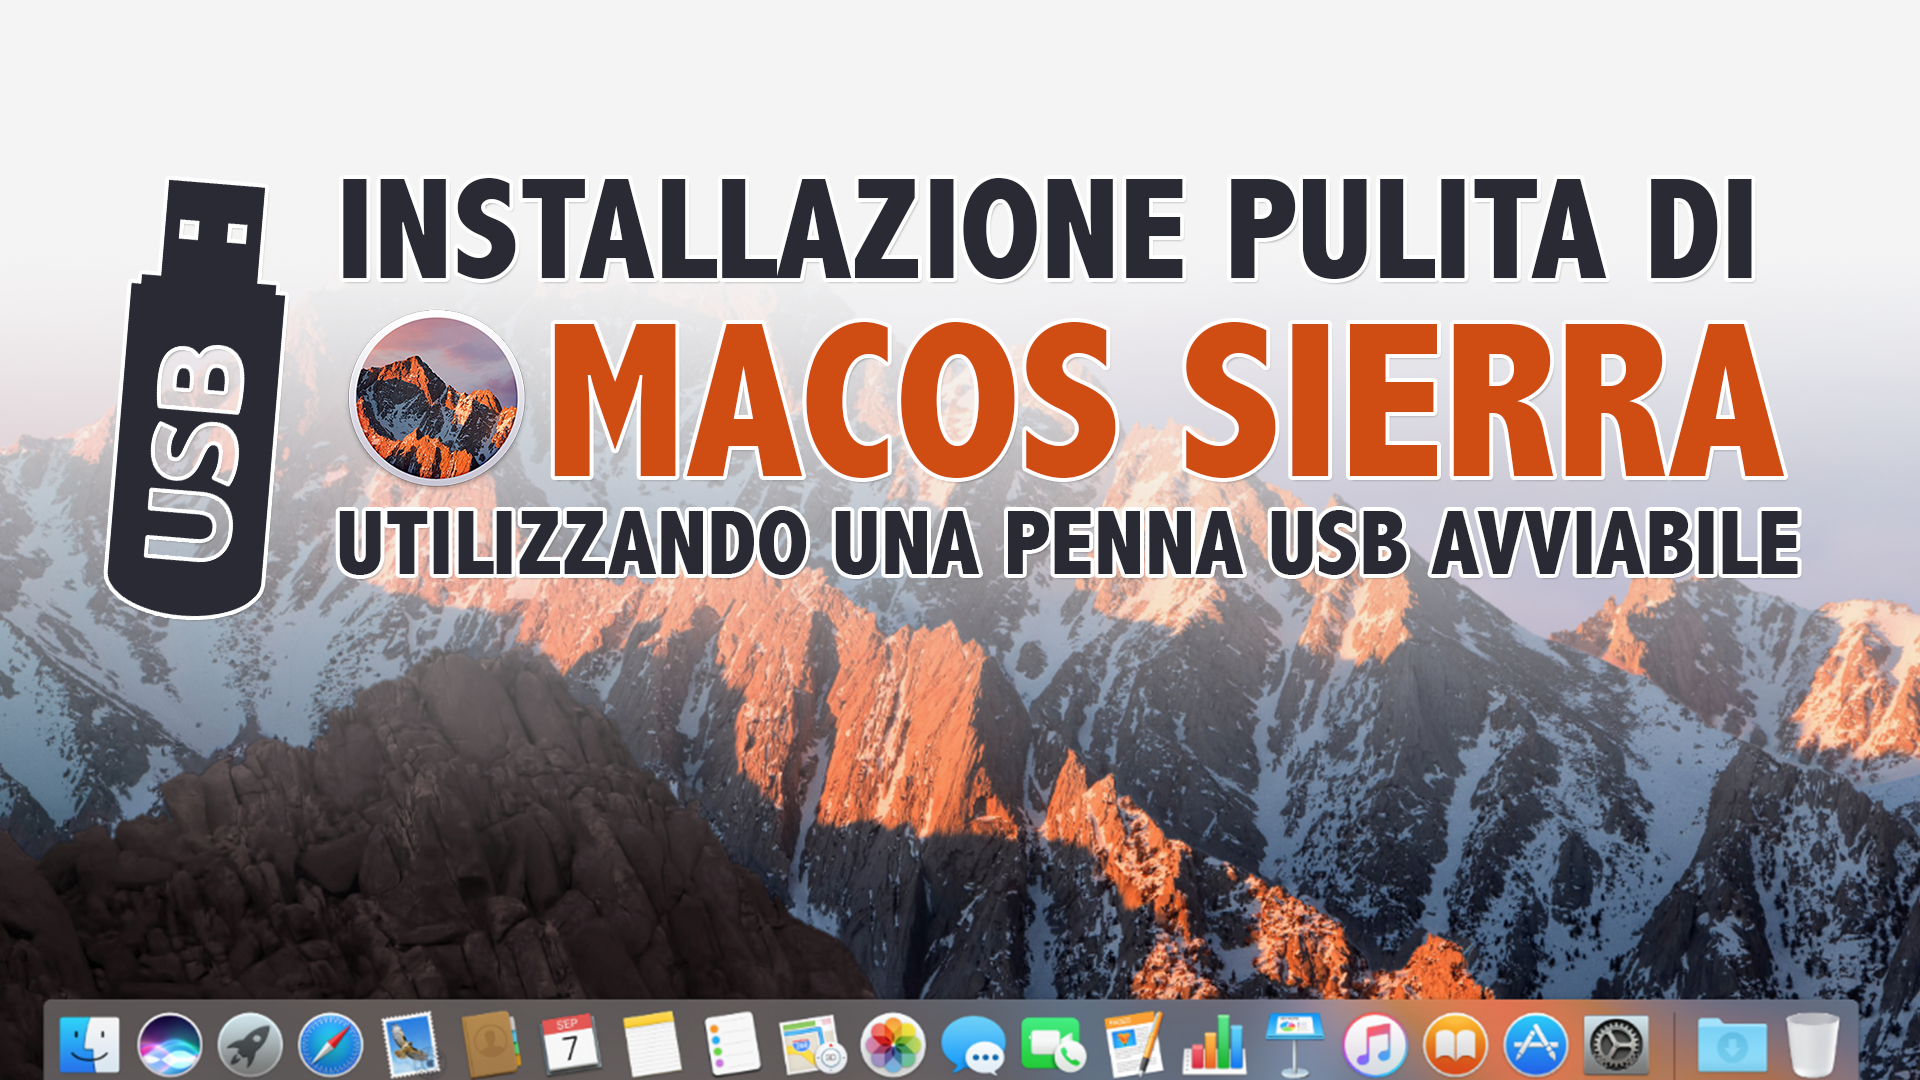 Scaricare e installare da zero macOS Sierra utilizzando una penna USB avviabile